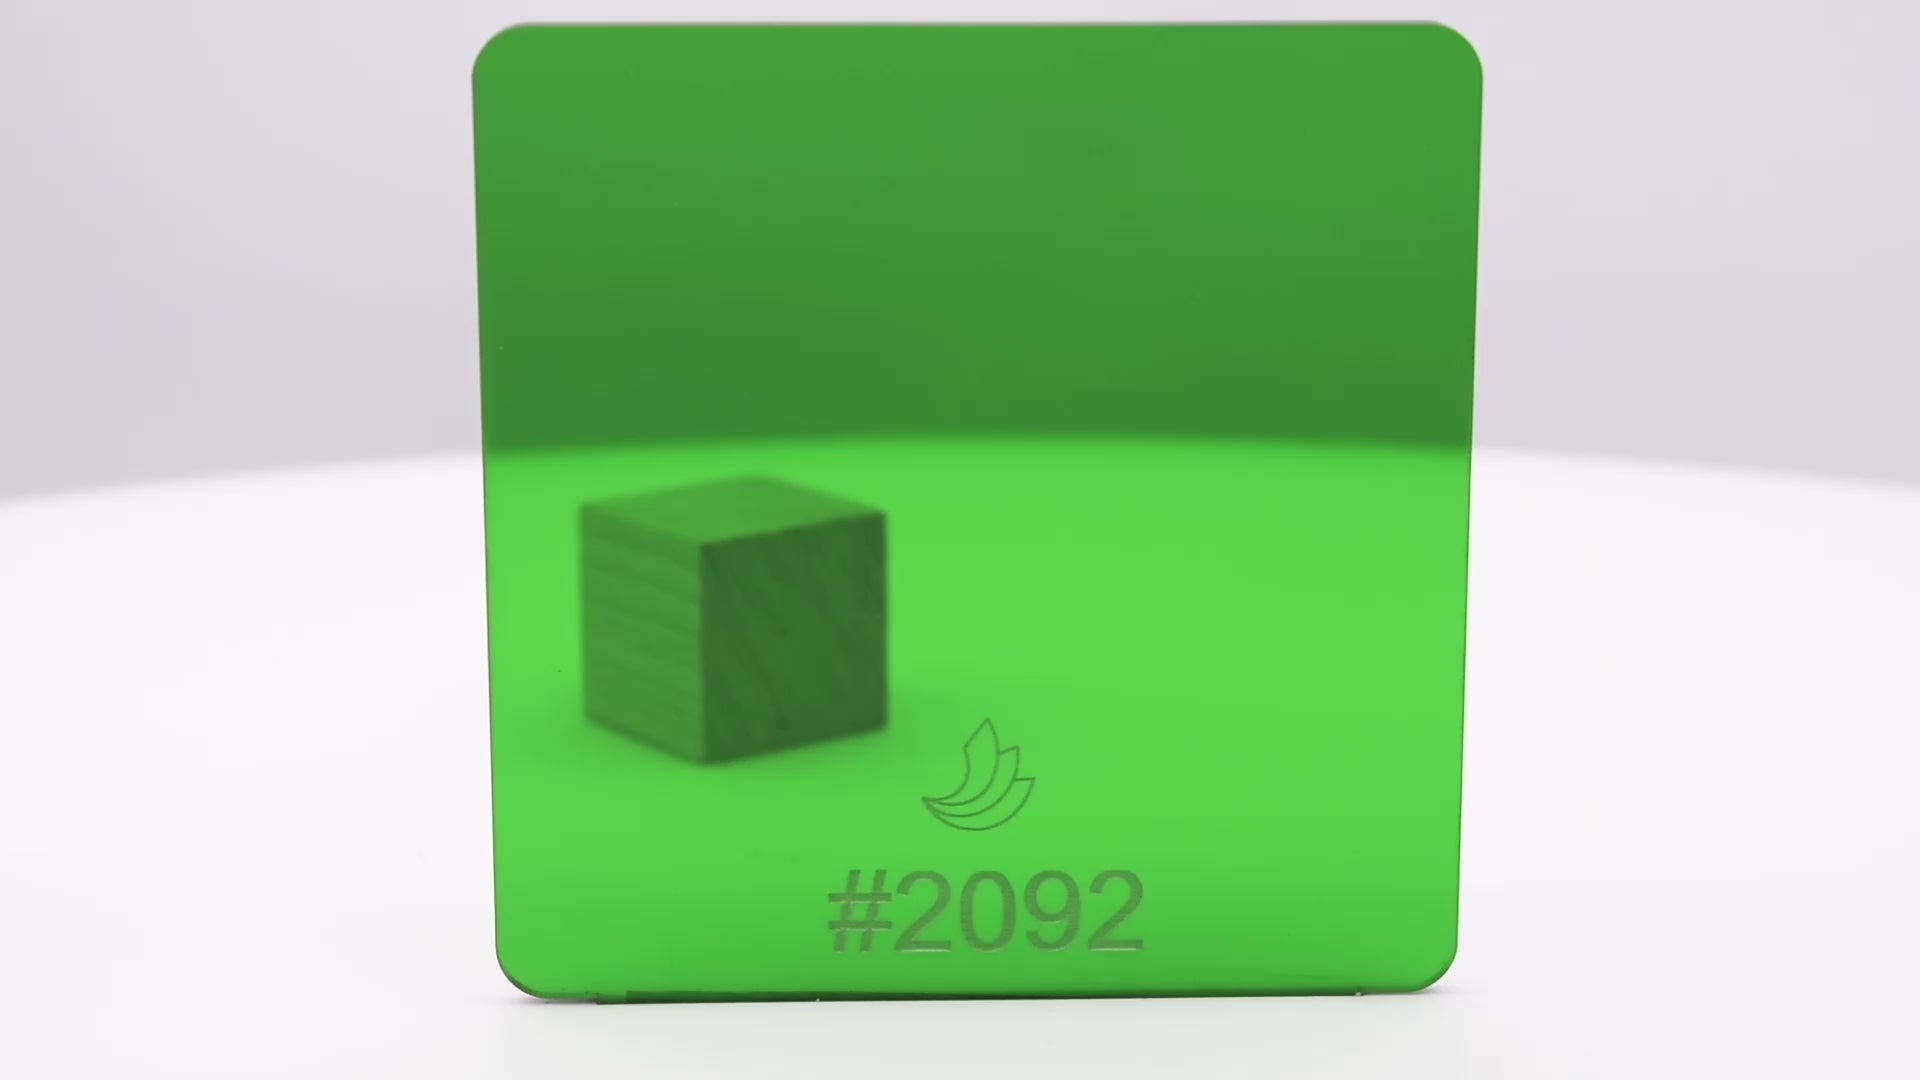 1/8" Green Transparent #2092 Acrylic Sheet